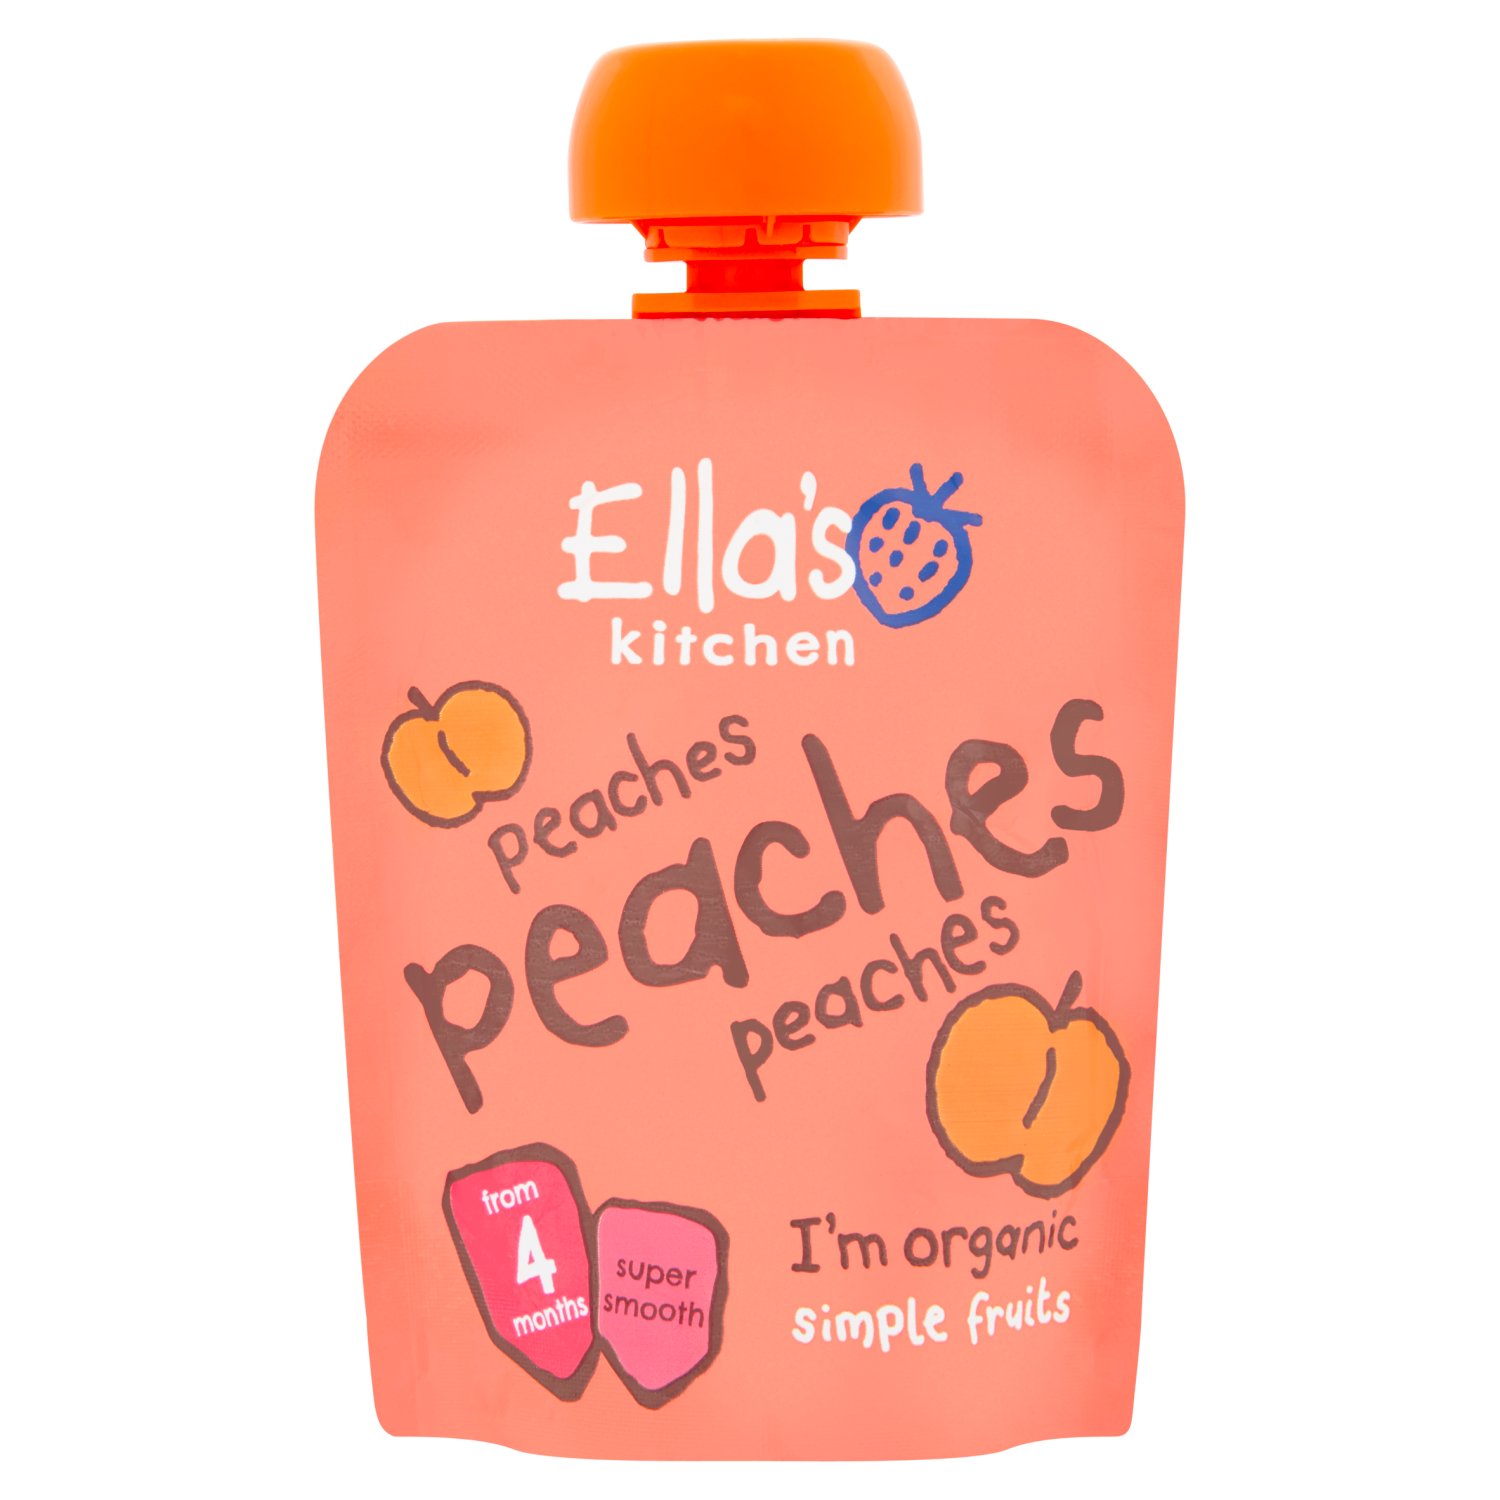 Ella's Kitchen Peaches Peaches Peaches (70 g)